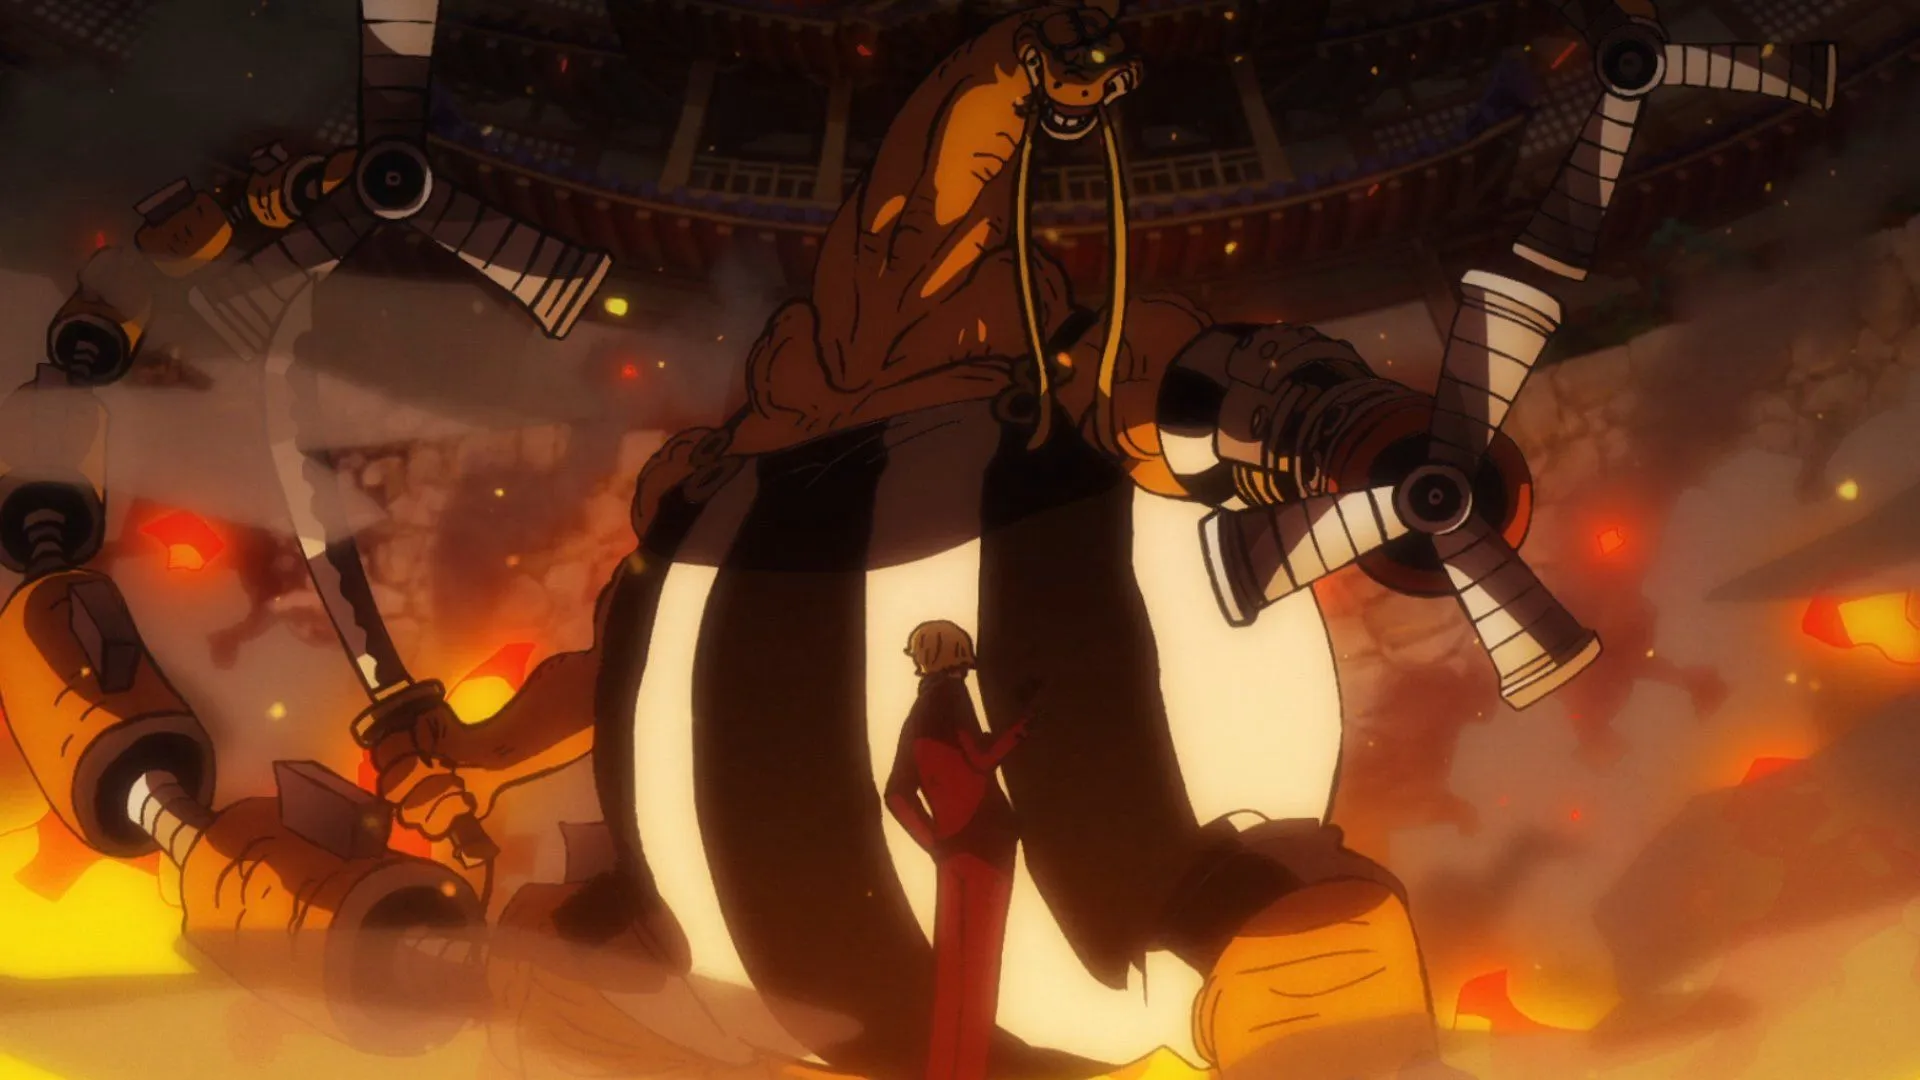 Sanji vs Queen como visto em One Piece (Imagem via Toei Animation, One Piece)